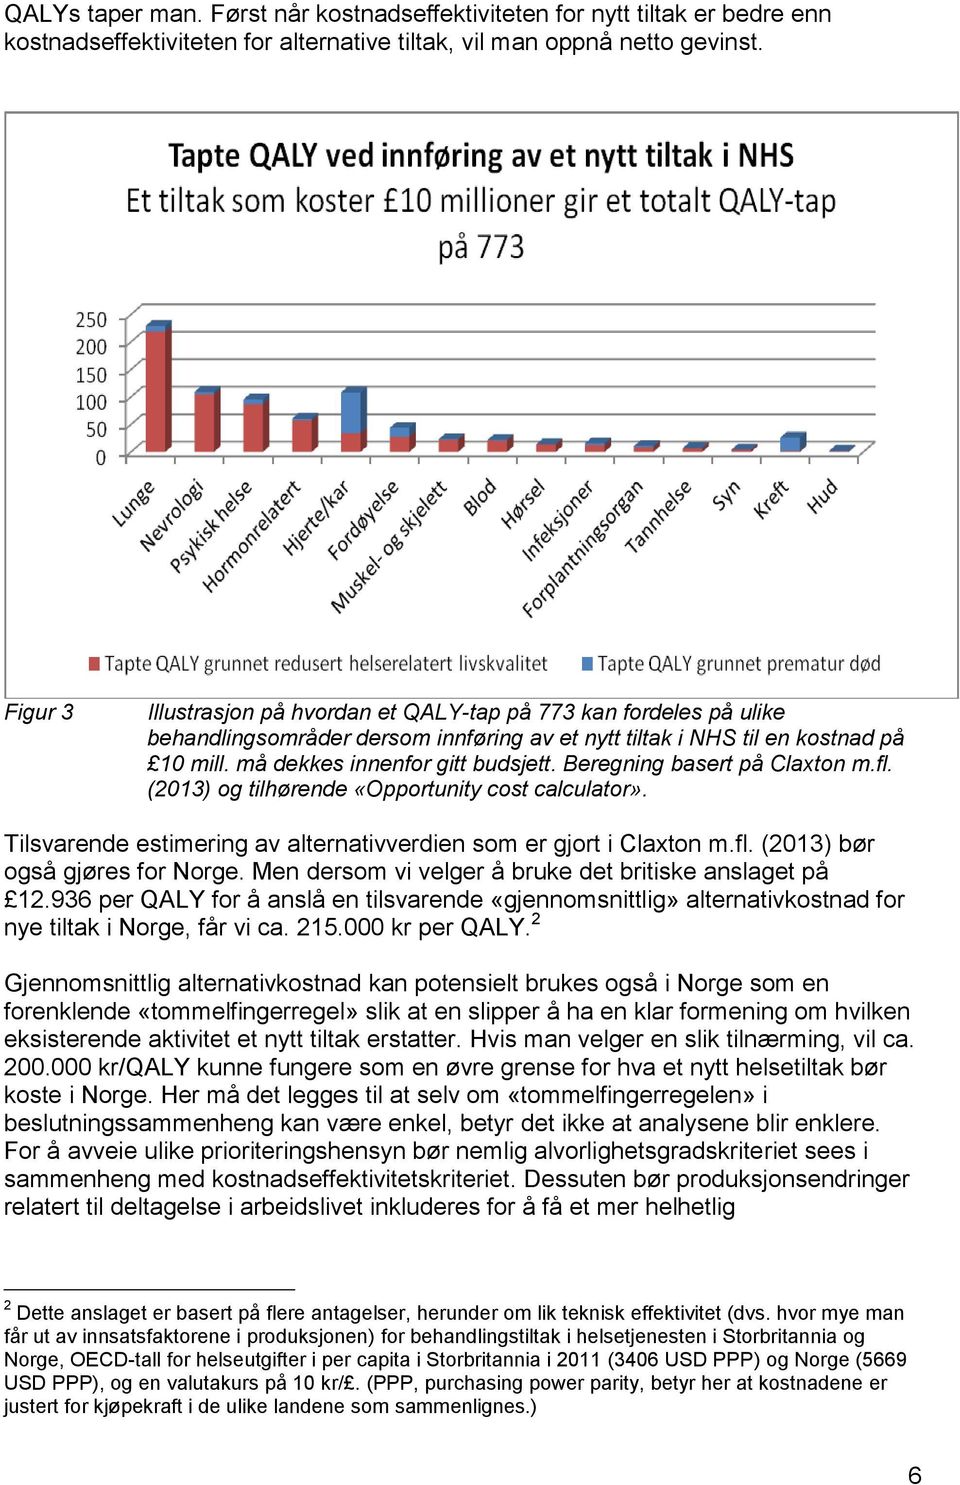 Beregning basert på Claxton m.fl. (2013) og tilhørende «Opportunity cost calculator». Tilsvarende estimering av alternativverdien som er gjort i Claxton m.fl. (2013) bør også gjøres for Norge.